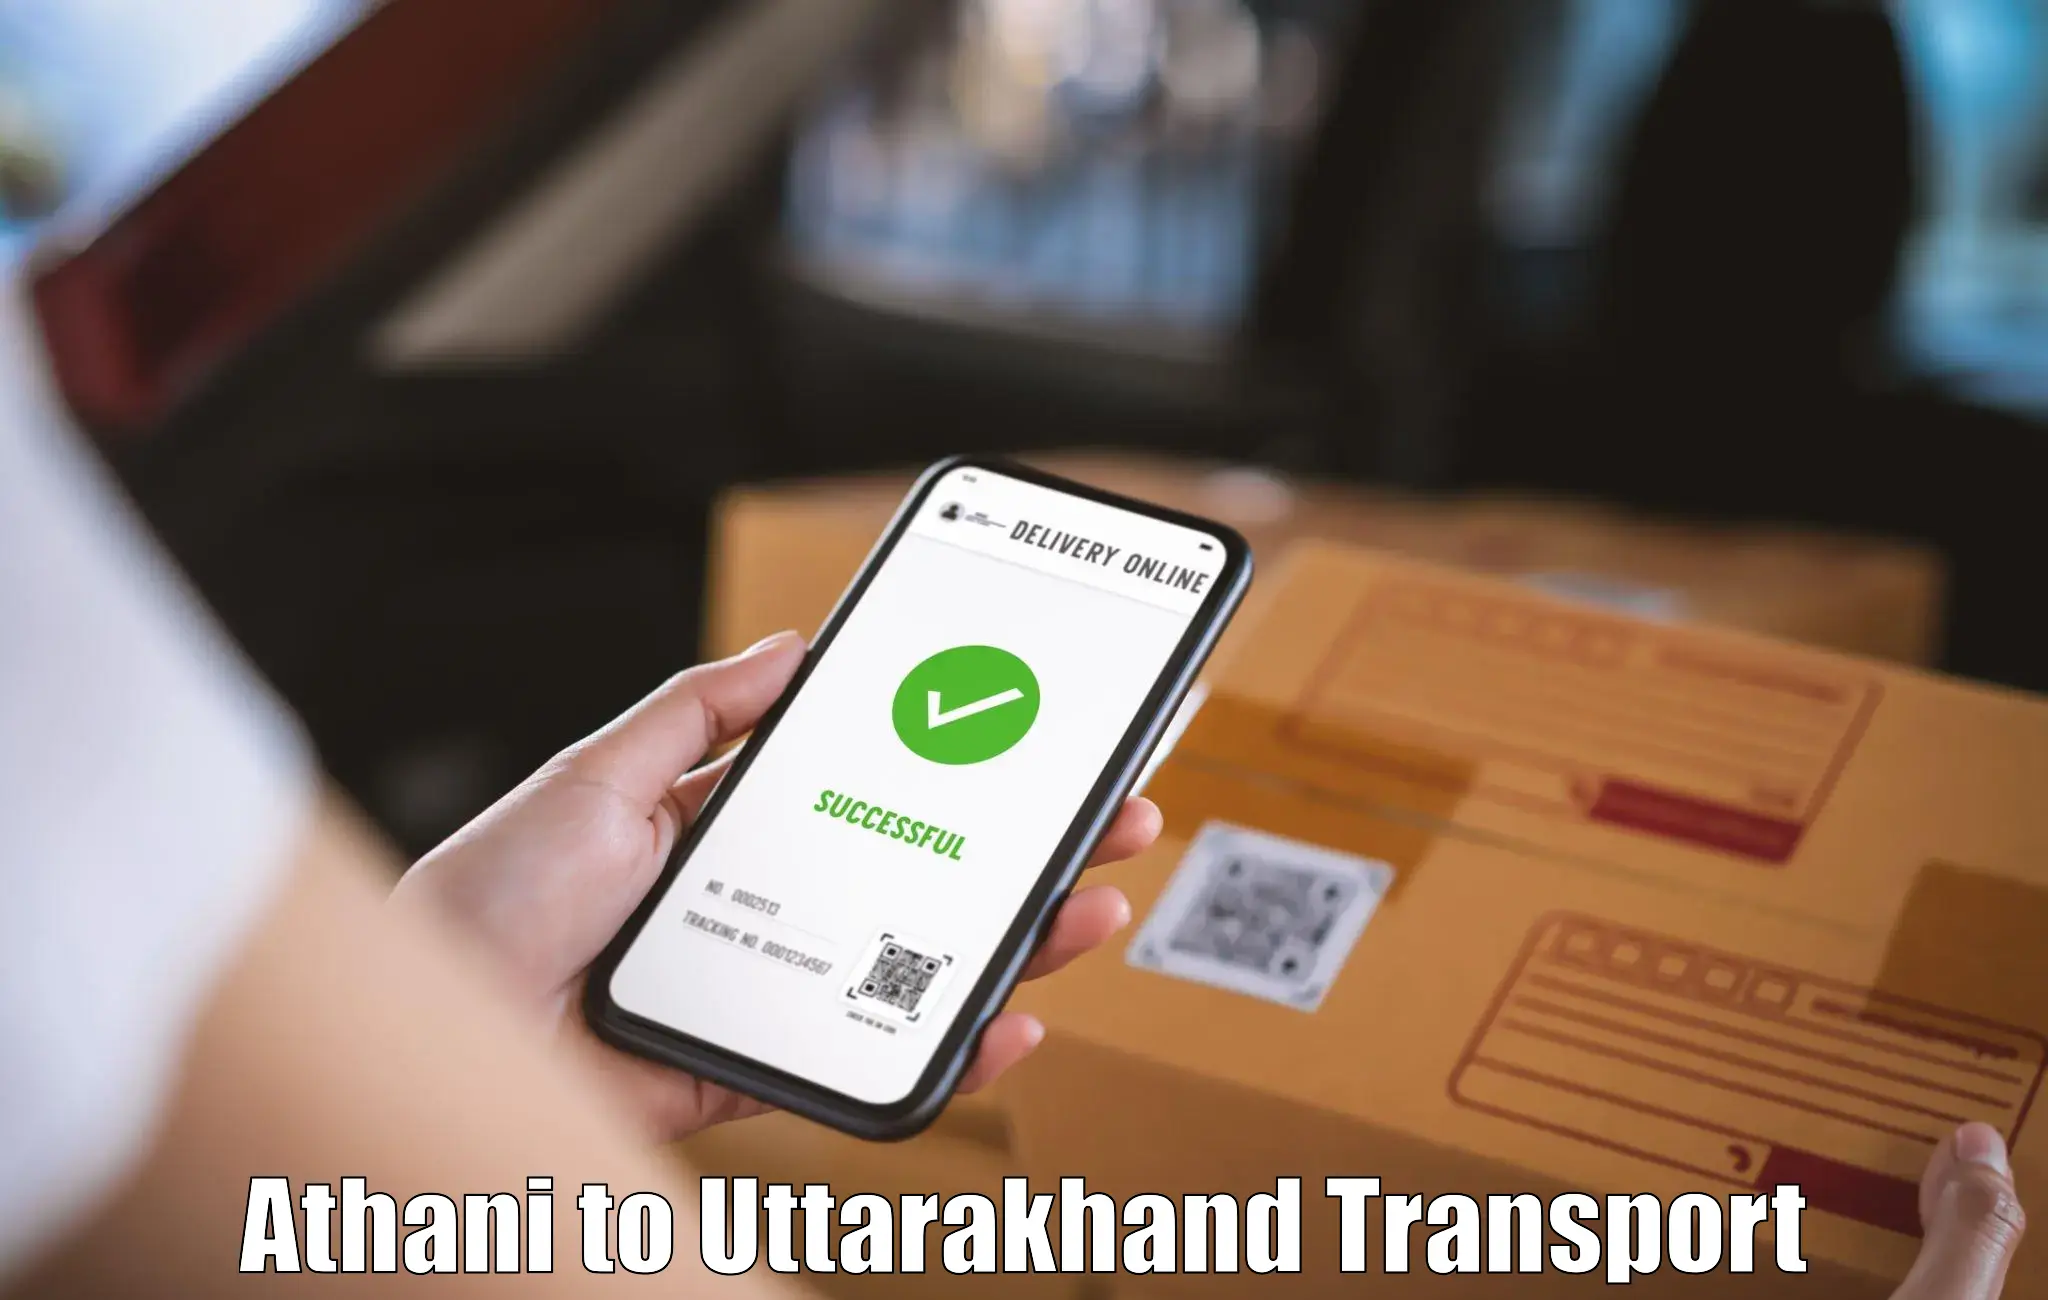 Online transport Athani to Uttarakhand